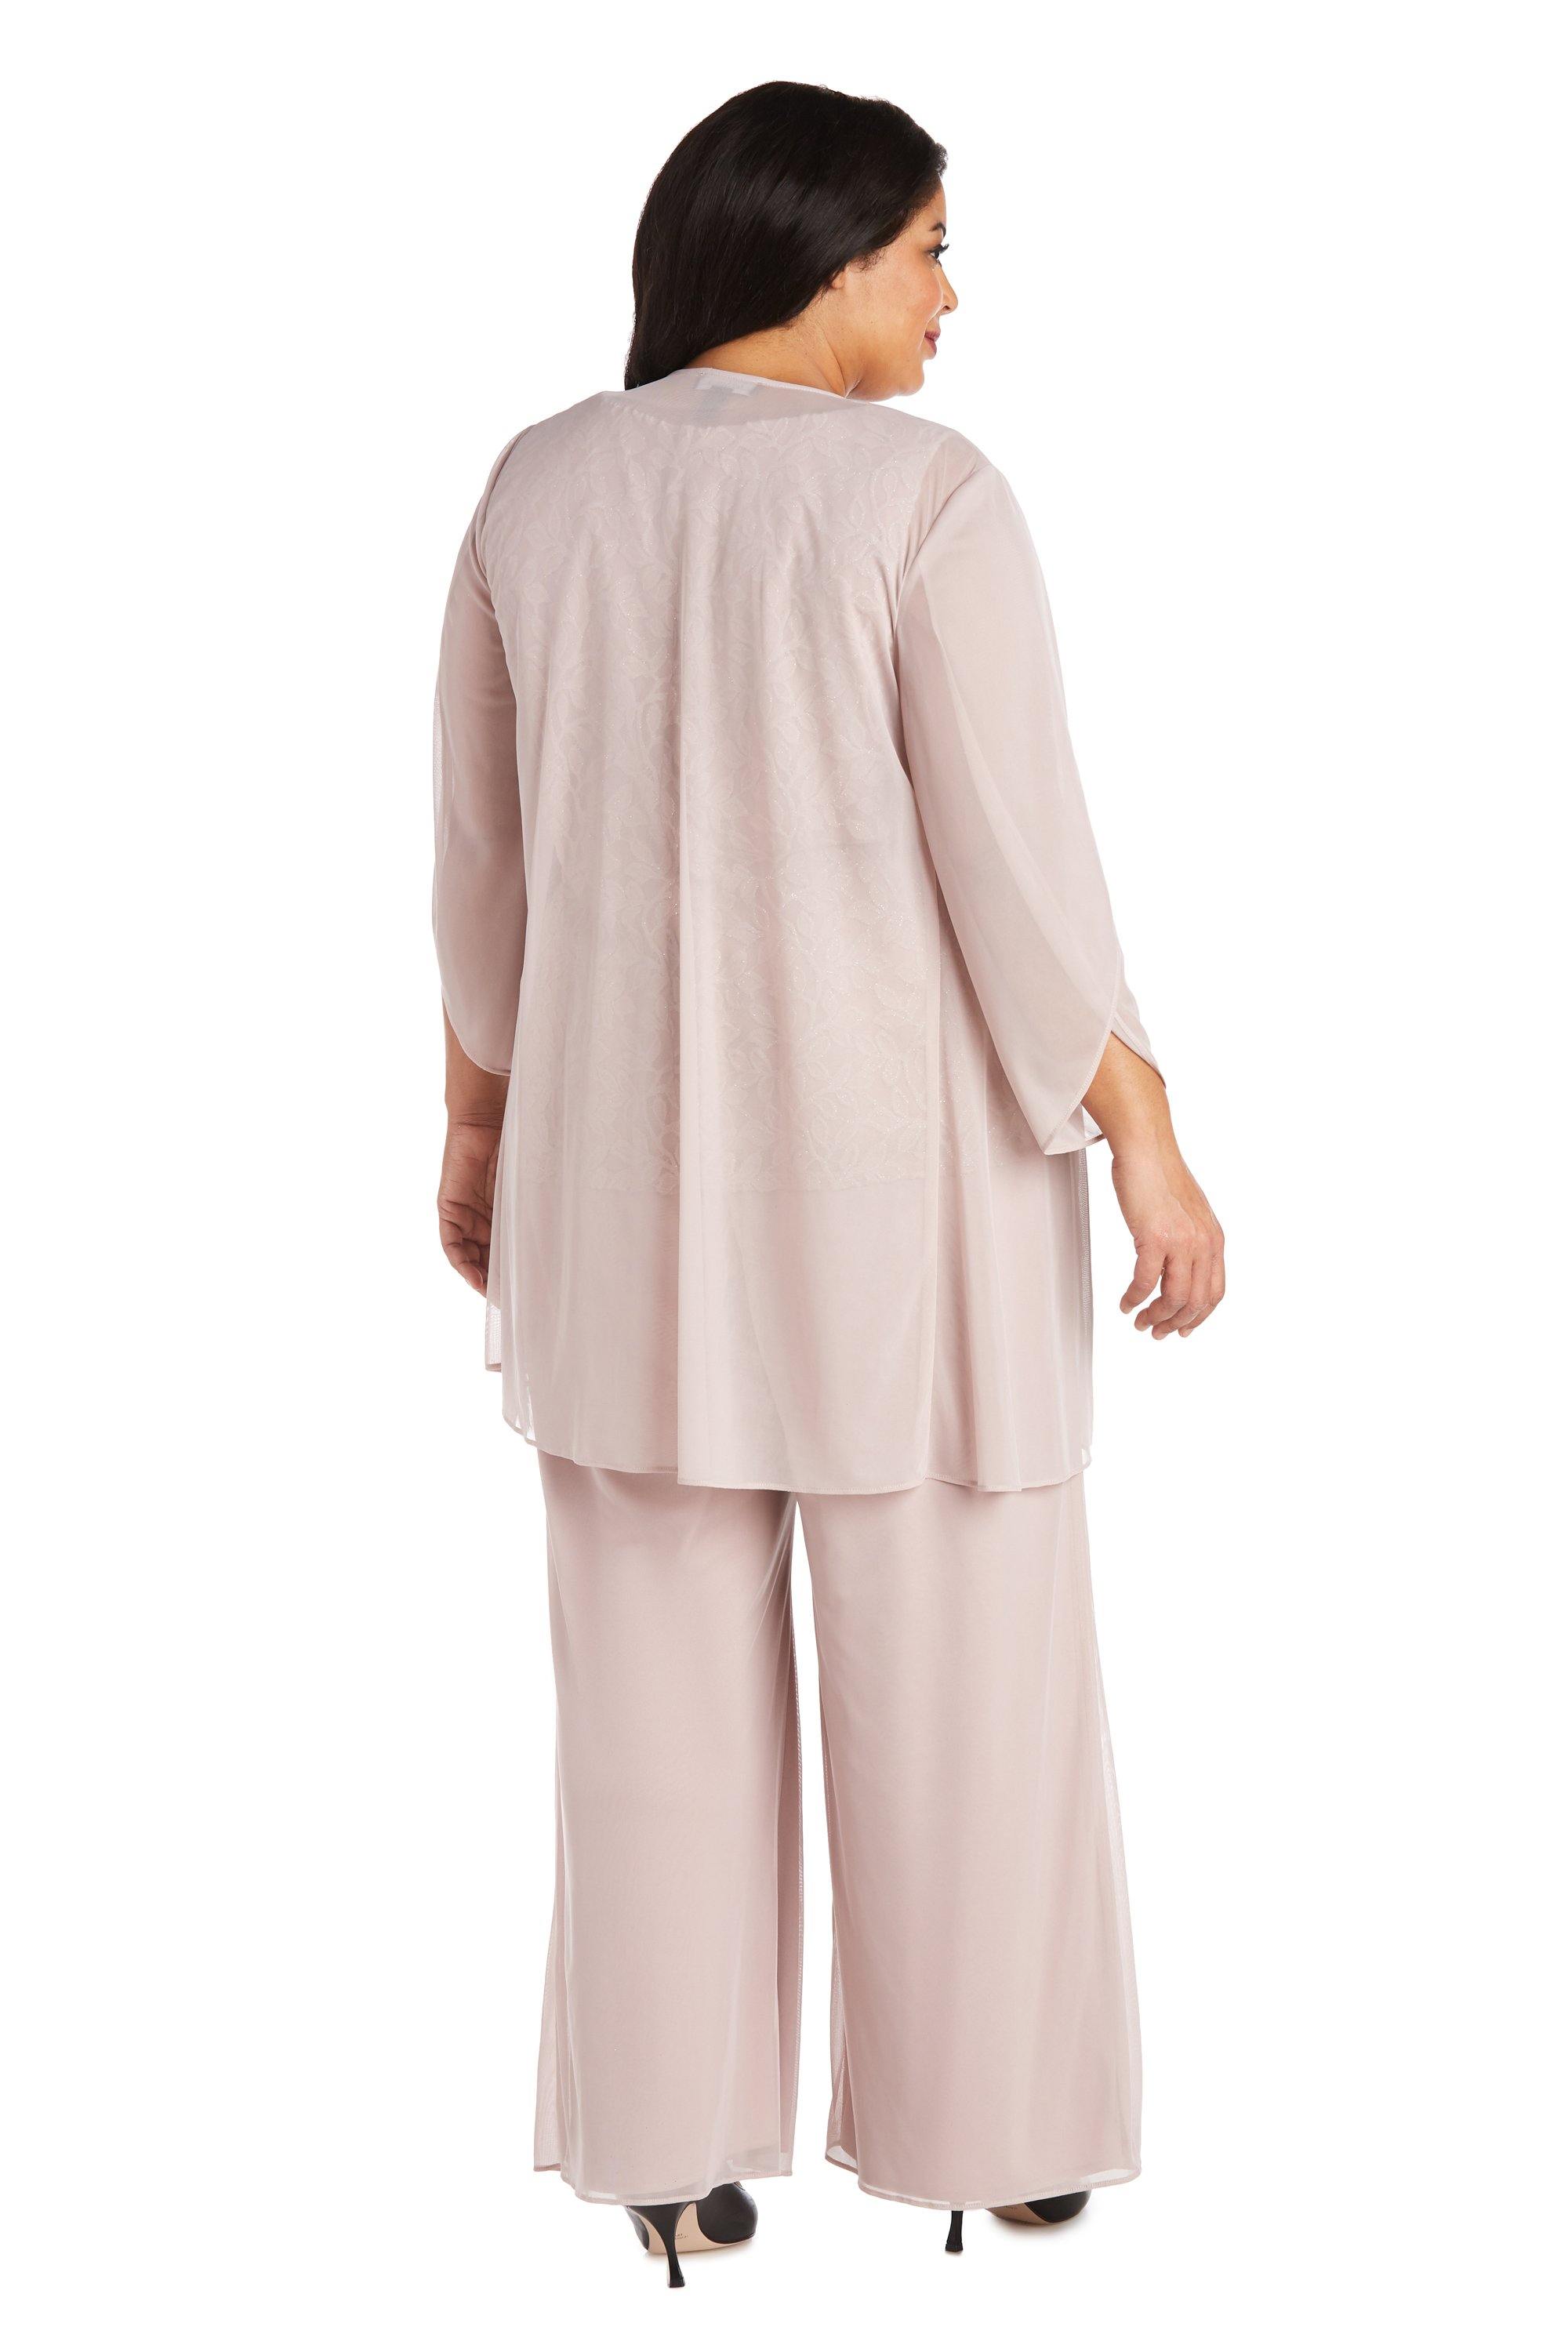 R&M Richards  Blush Formal Pansuit Sale - The Dress Outlet